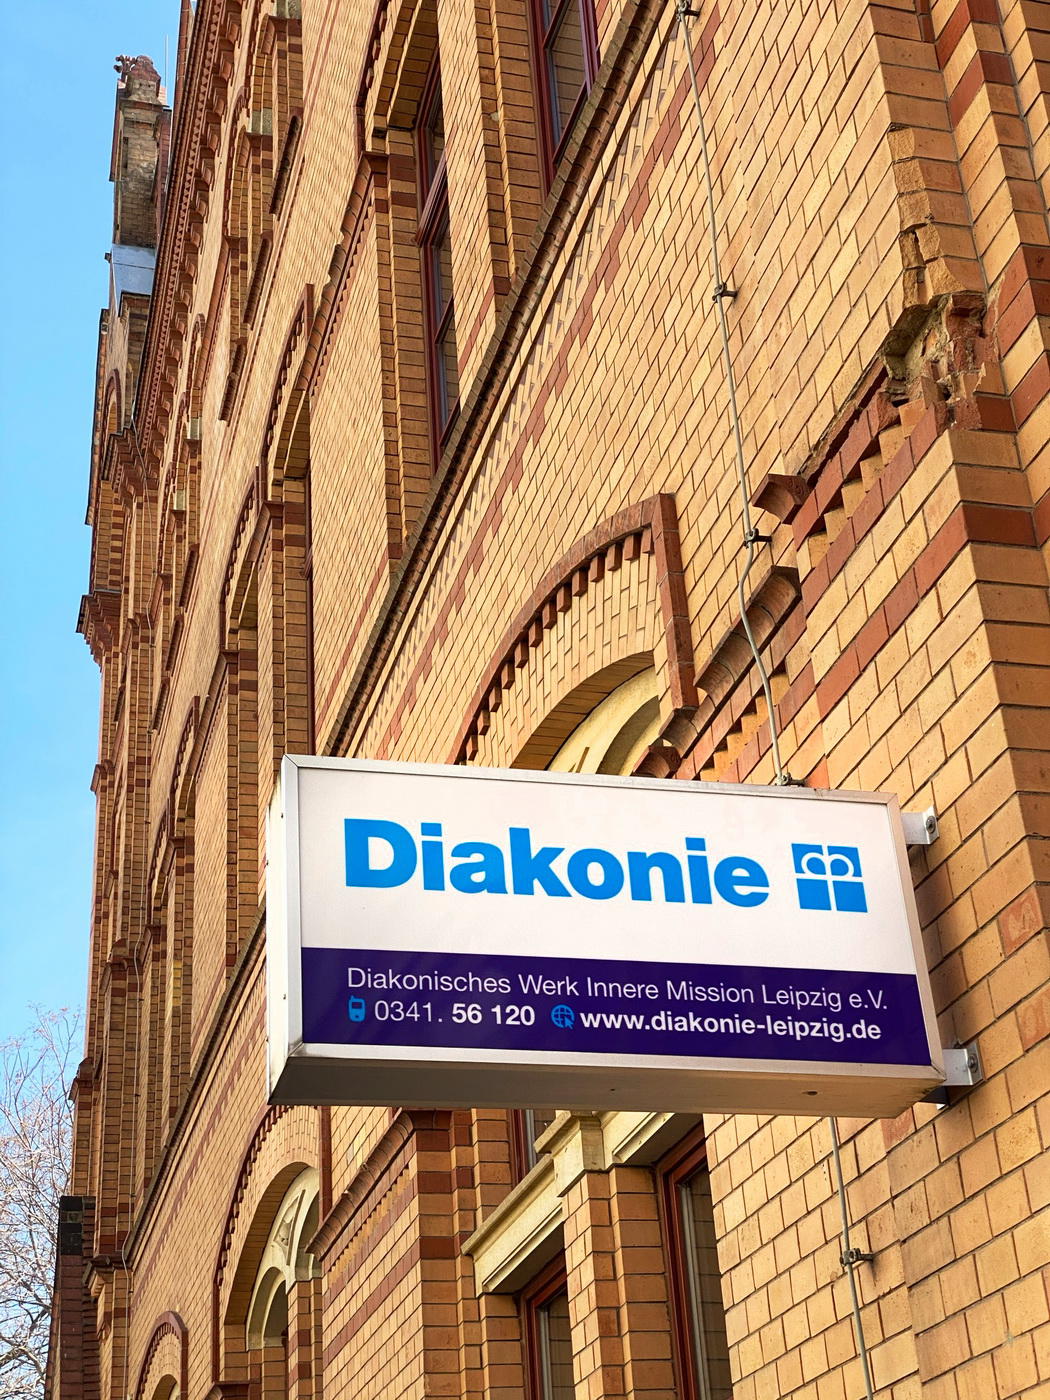 Bilder Diakonie Leipzig - Diakonisches Werk Innere Mission Leipzig e.V. | Haus der Diakonie